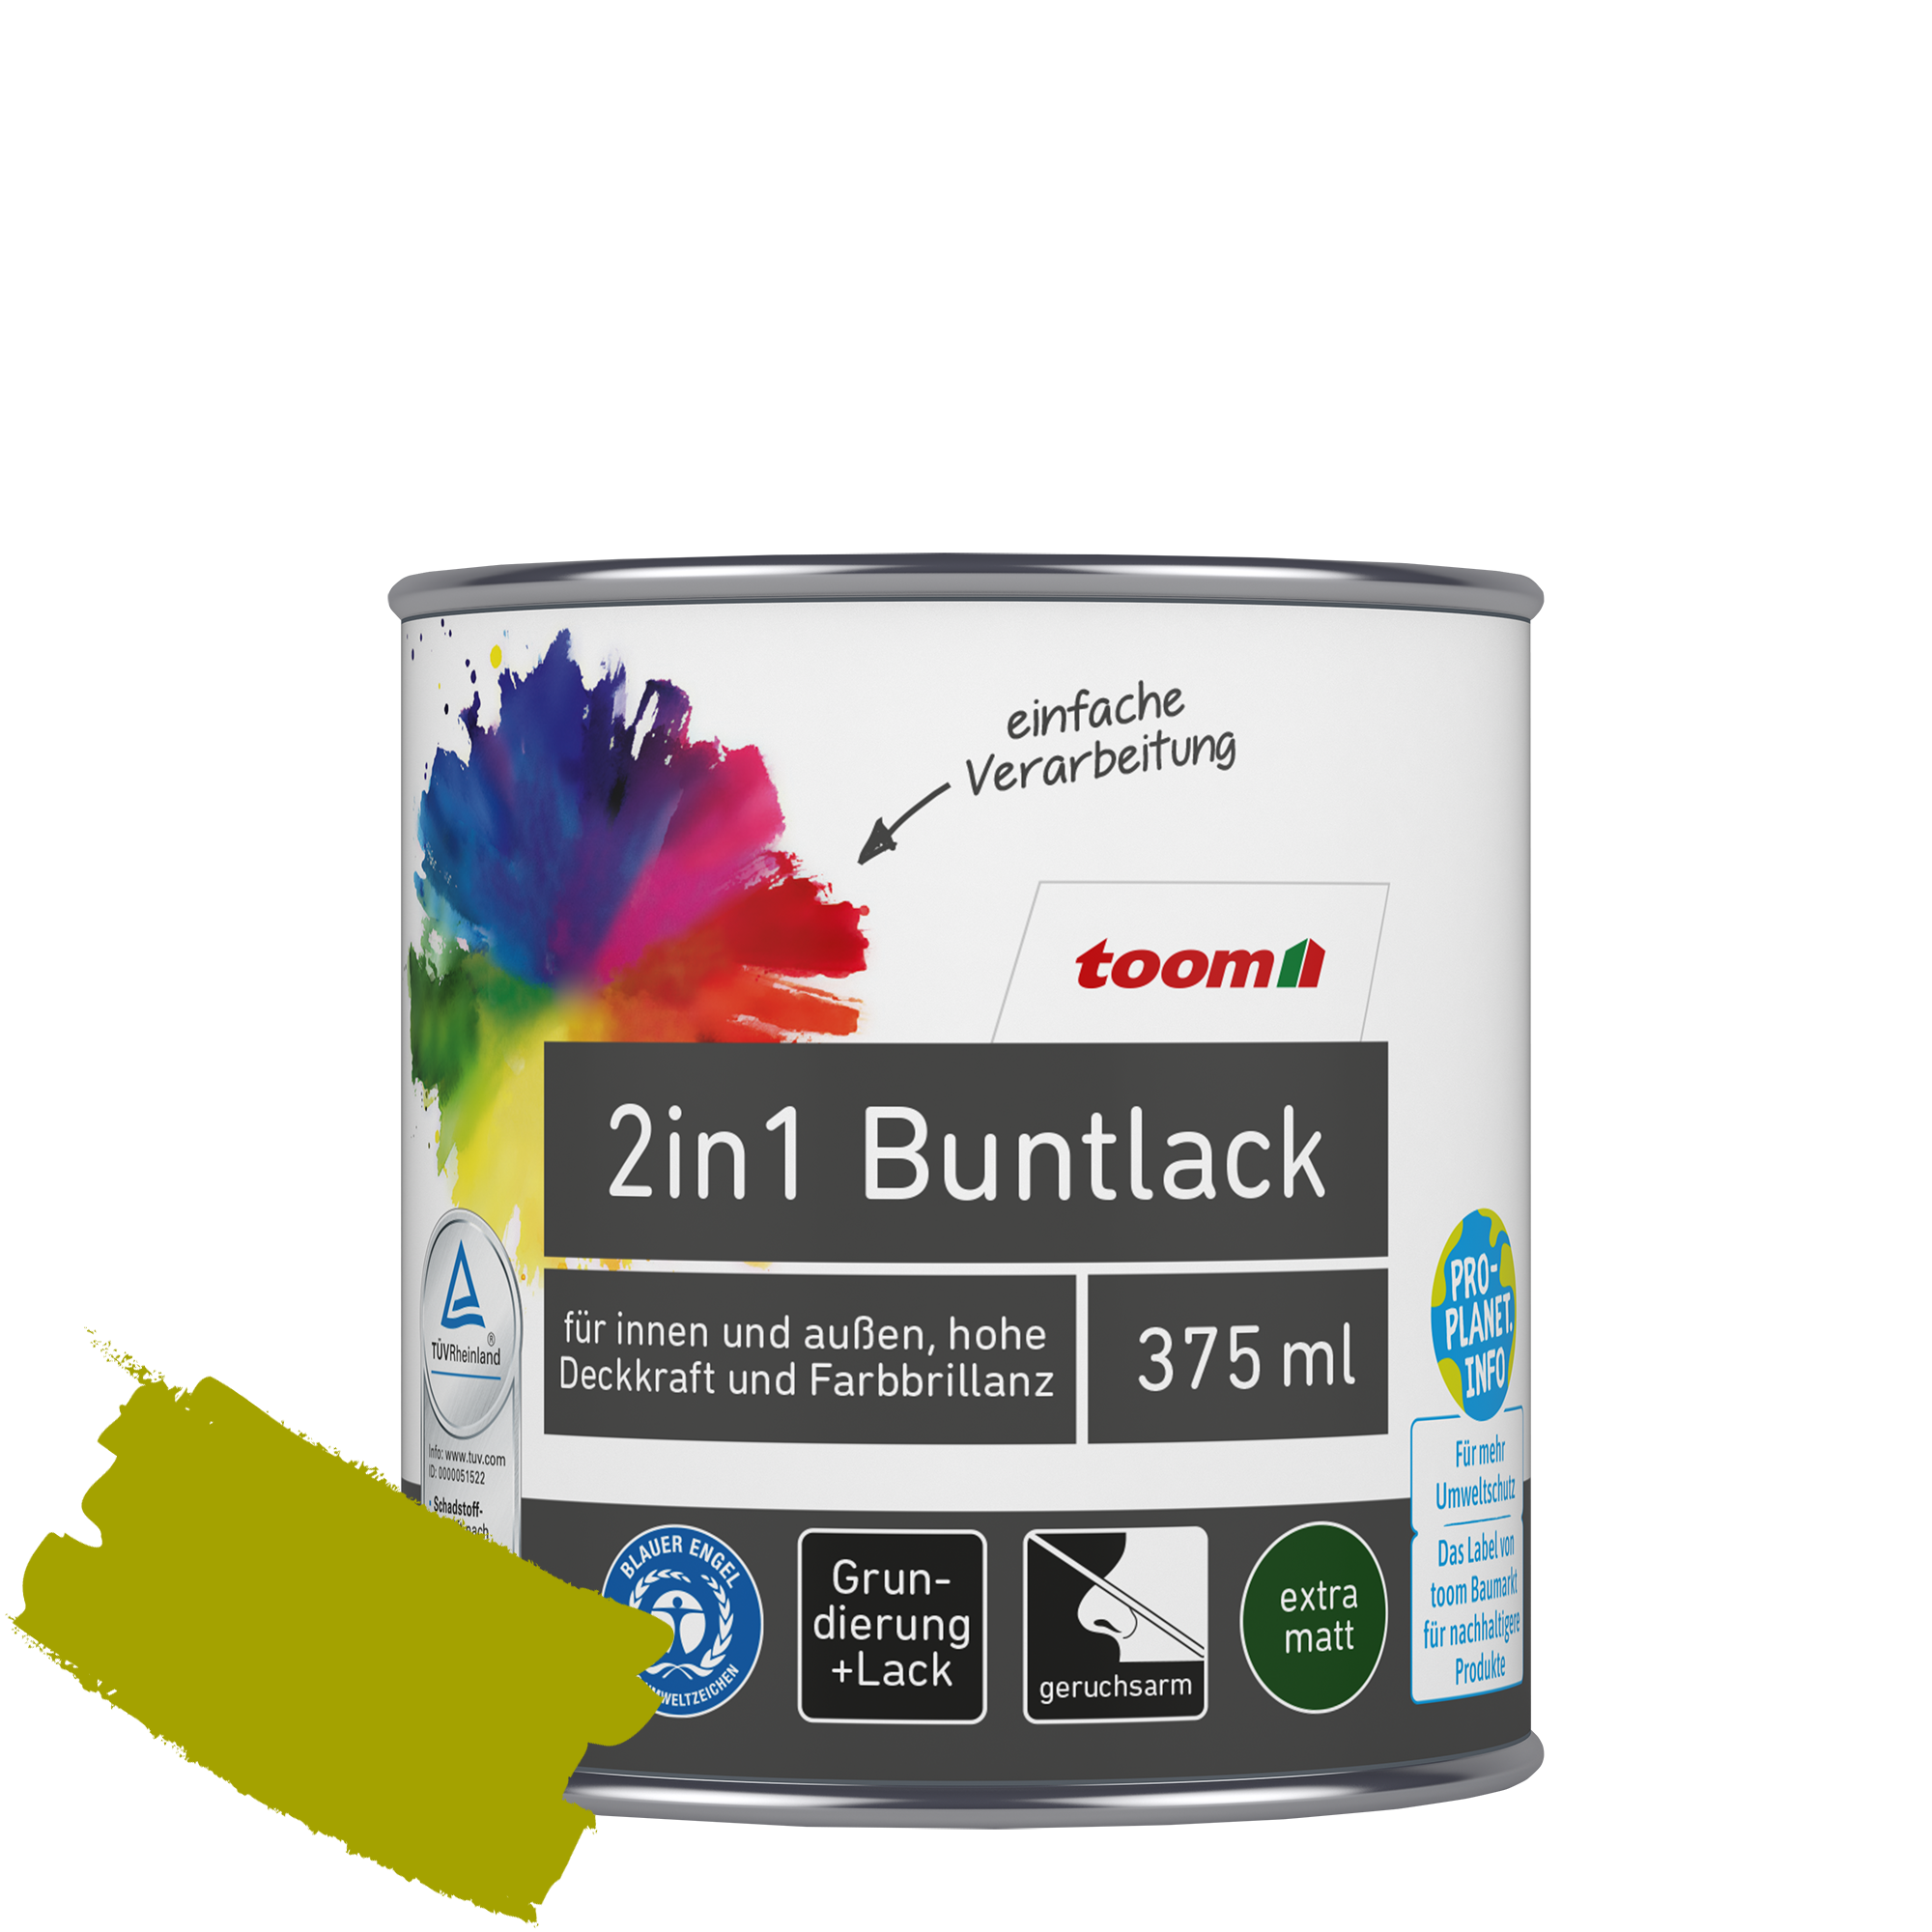 2in1 Buntlack 'Frühlingswiese' limettengrün matt 375 ml + product picture